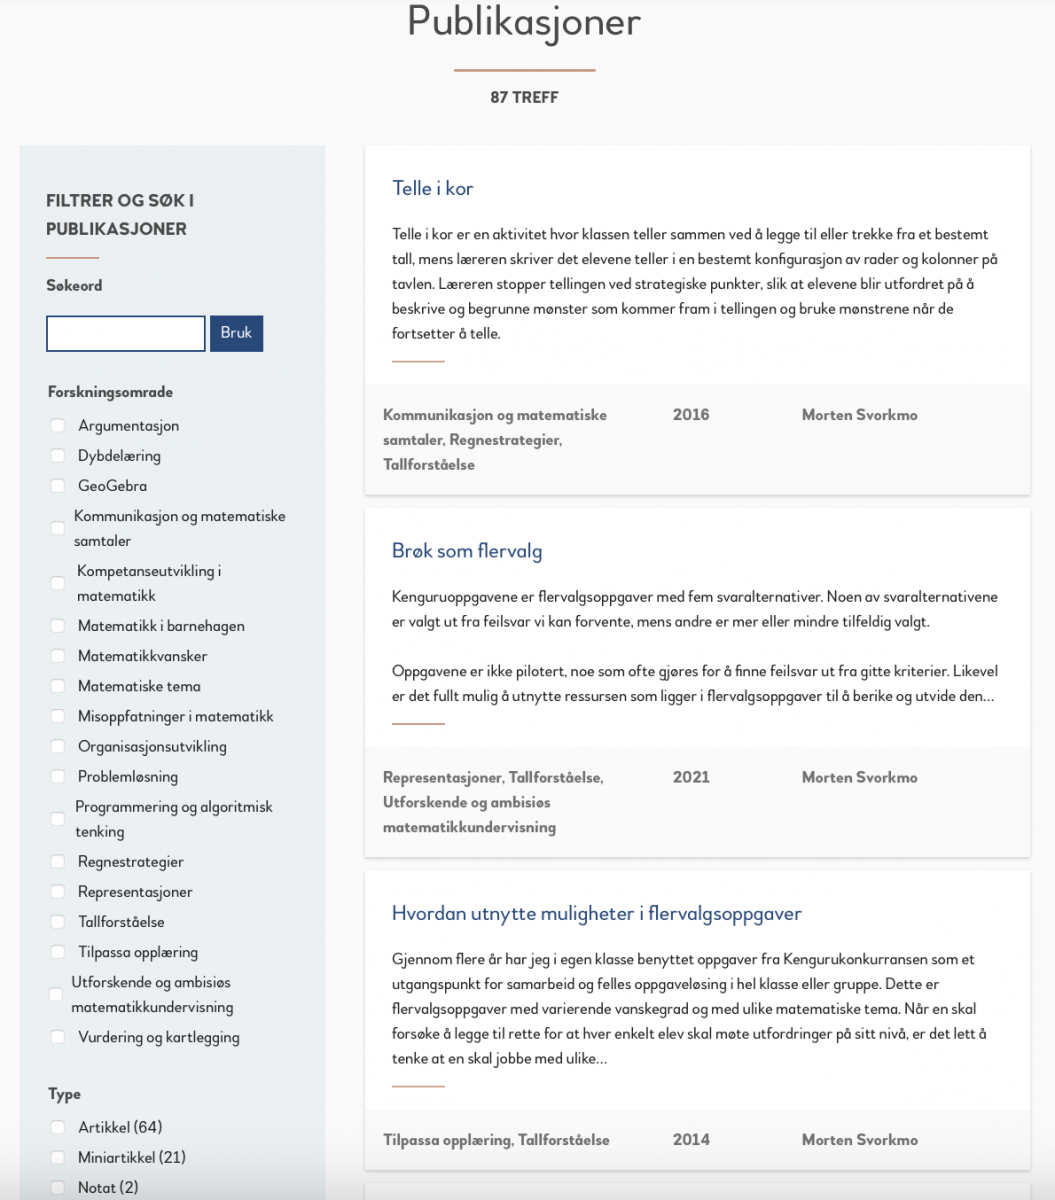 Faksimile av en nettside som viser en publikasjonsdatabase